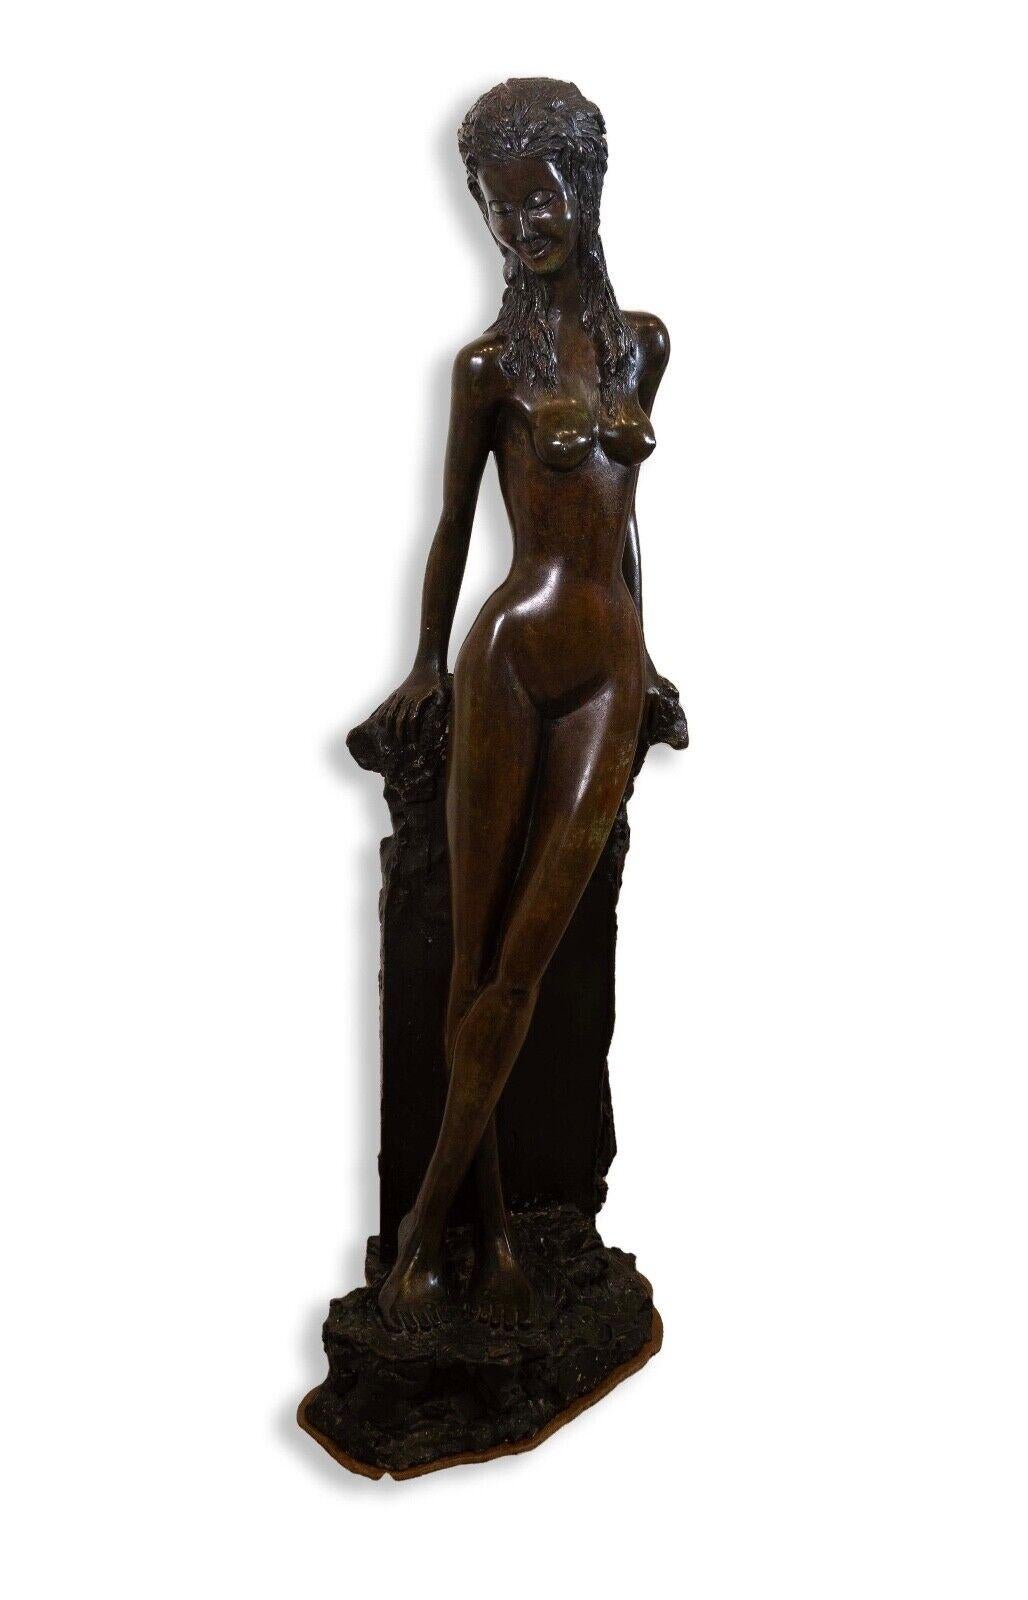 Charmante sculpture figurative moderne en bronze représentant une femme nue. Stylisé dans un style Art déco ou Art nouveau. Artiste inconnu. Une composition romantique et intemporelle. Provenant d'une collection privée. Dimensions : 39,5 